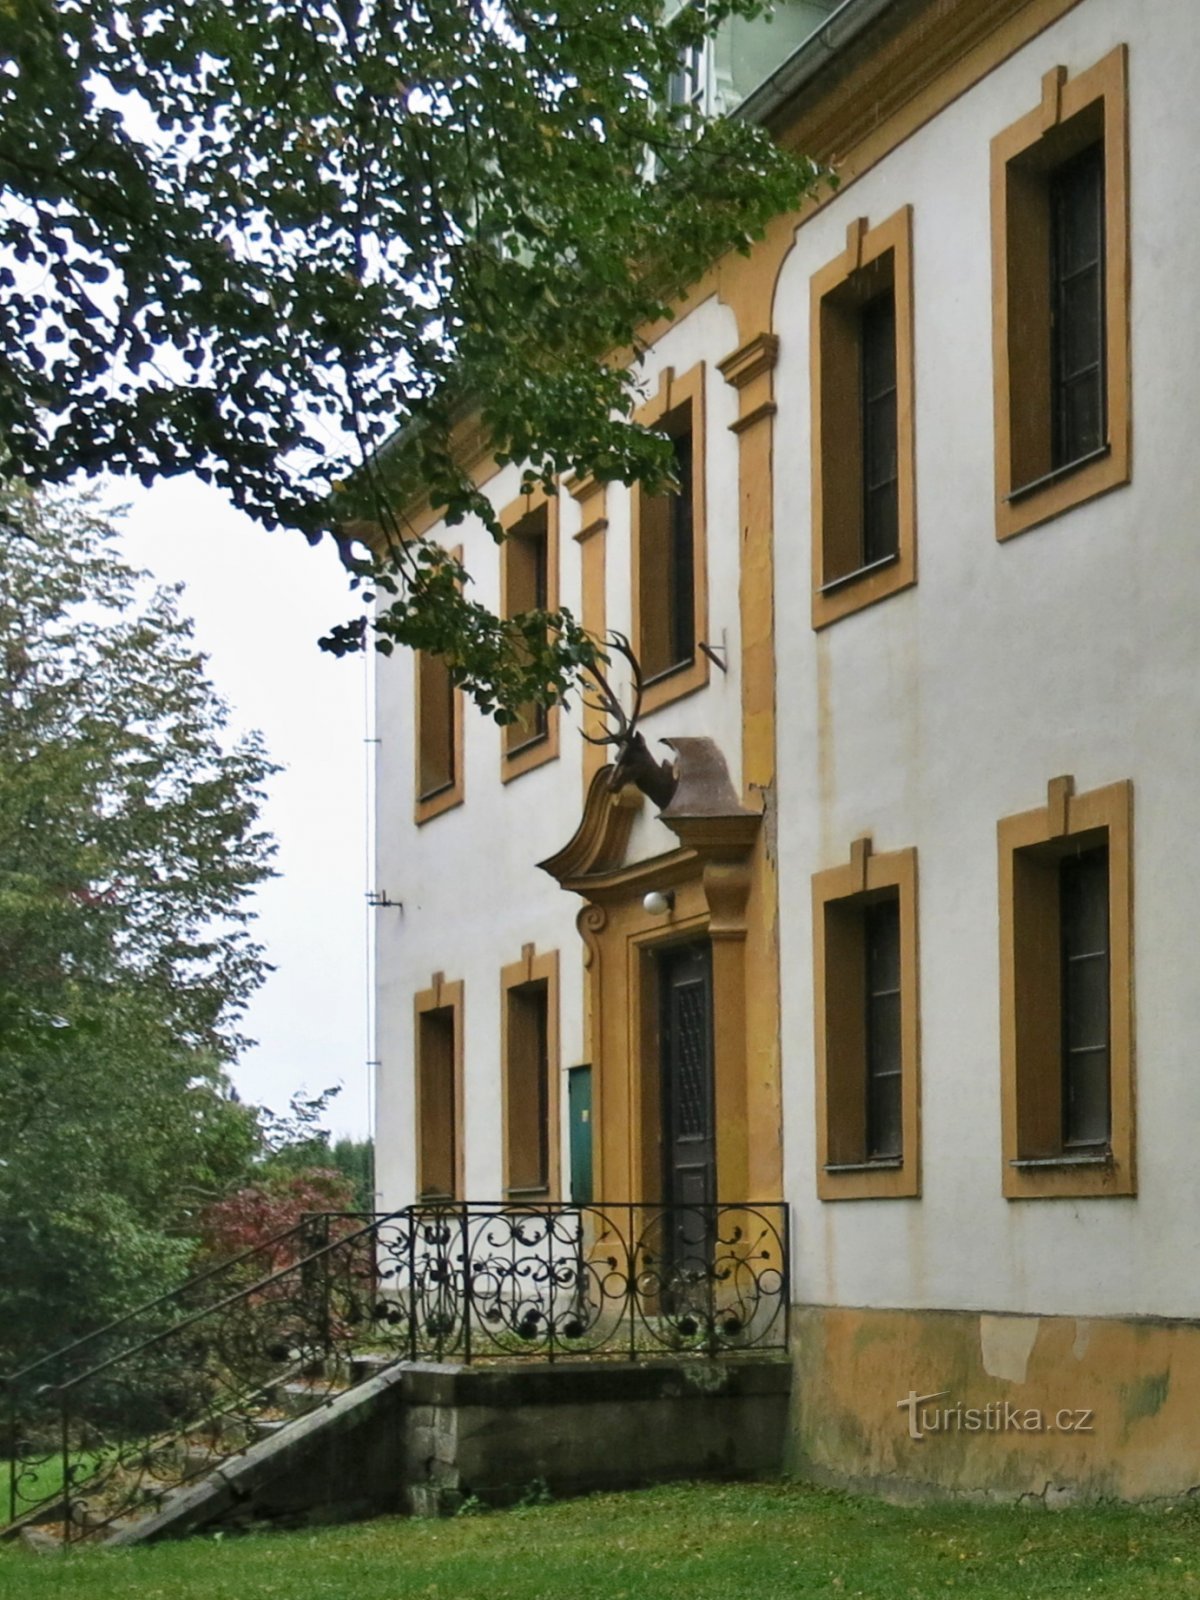 Bouzov - Jägerhausin metsätalous